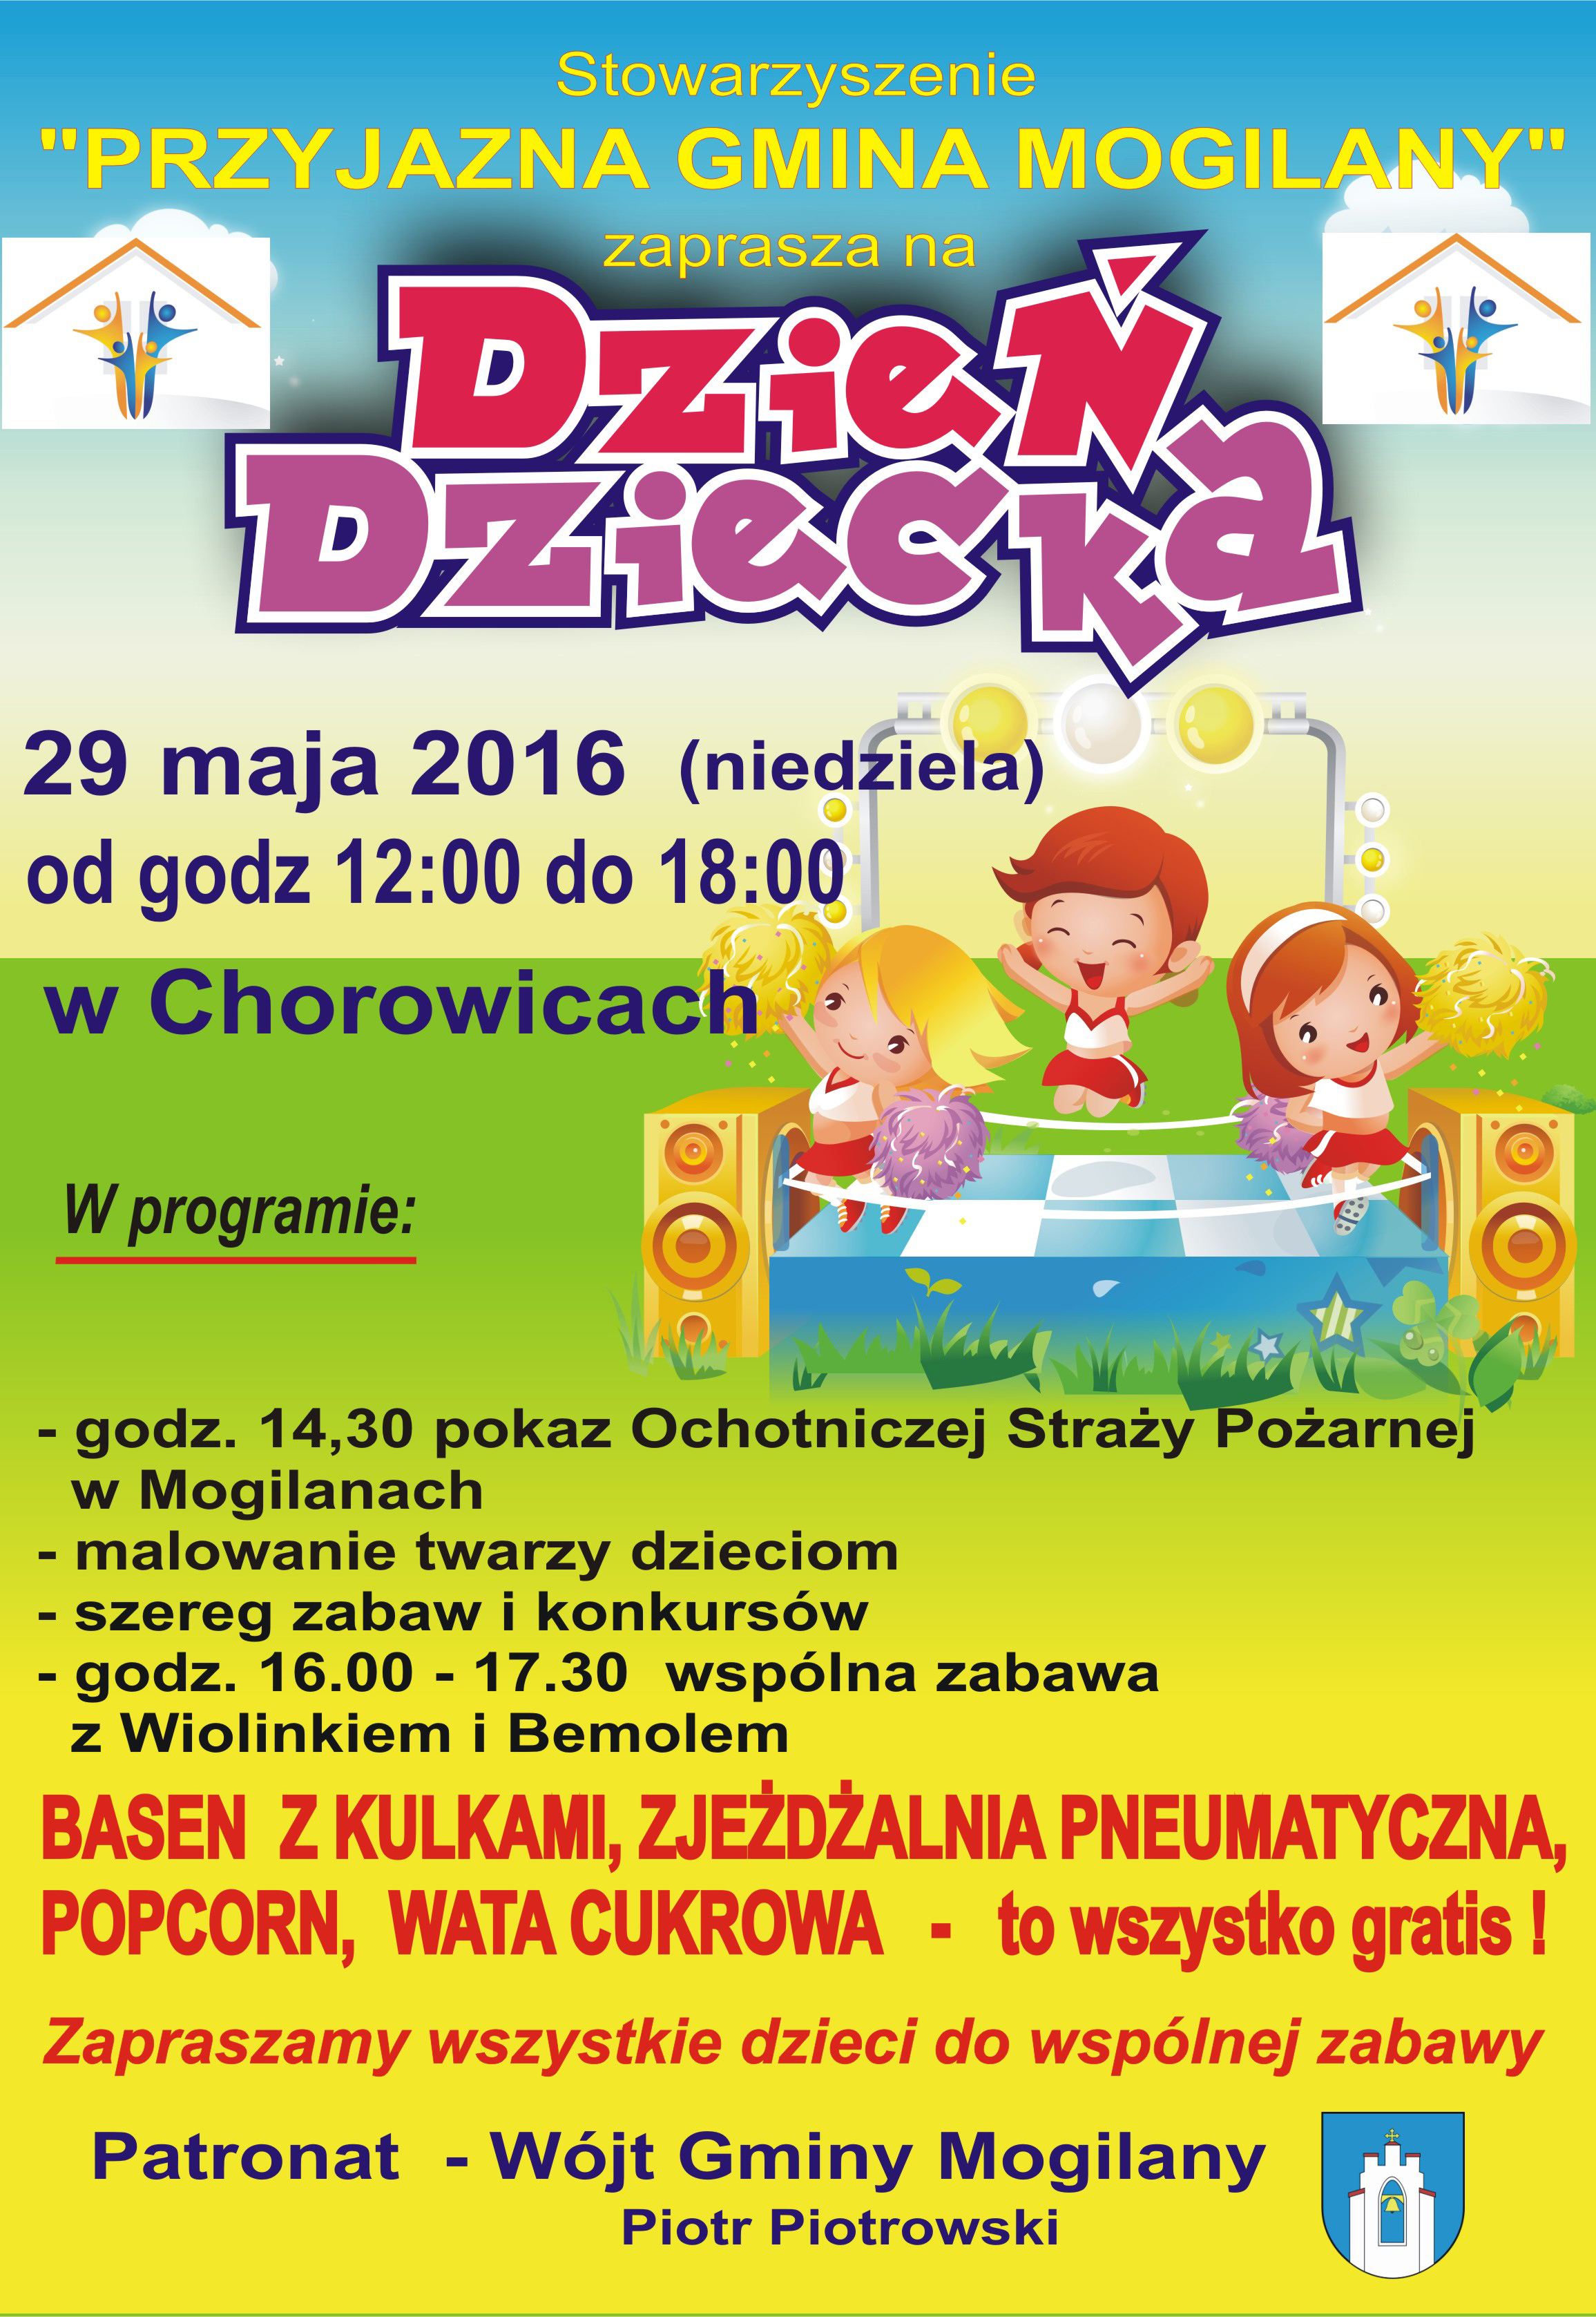 Dzień Dziecka w Chorowicach. Zaproszenie